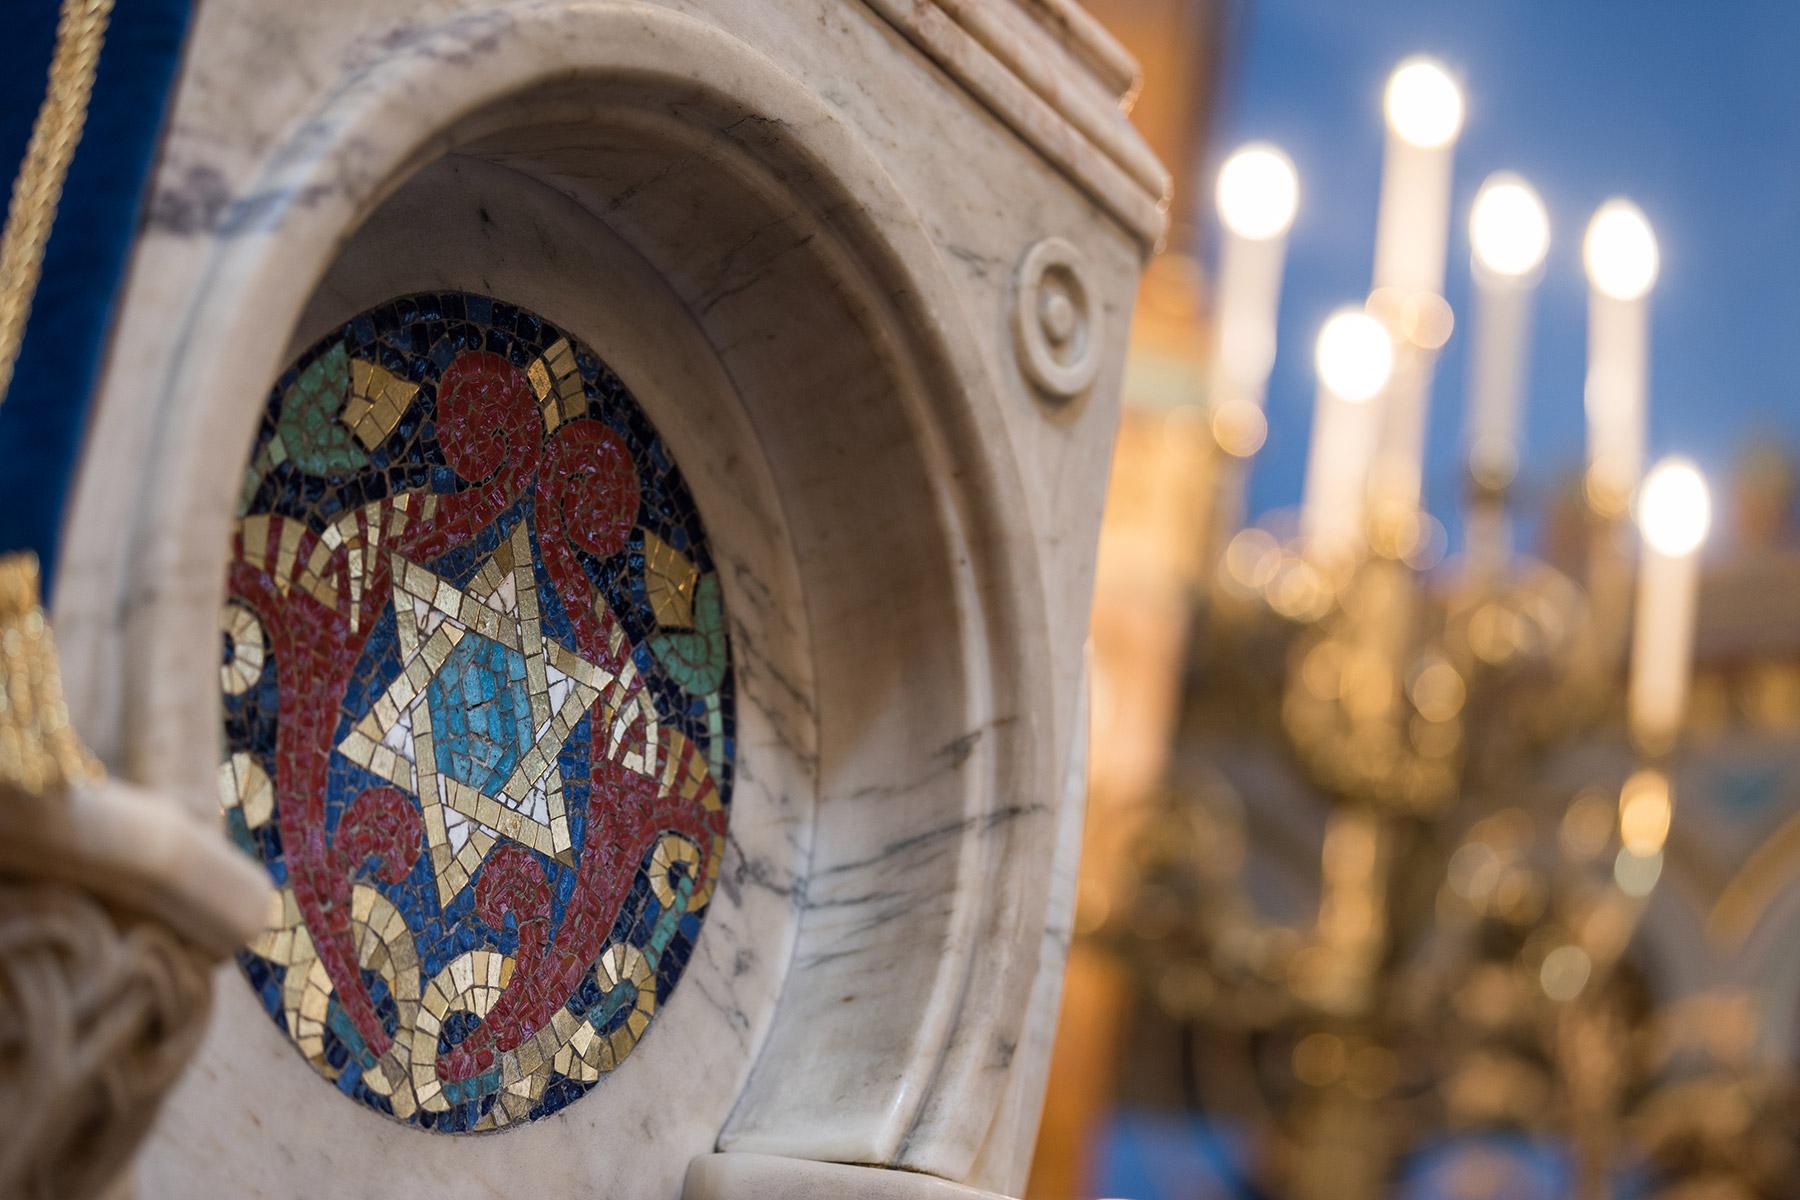 Garnethill Synagogue in Glasgow. Photo: LWF/Albin Hillert